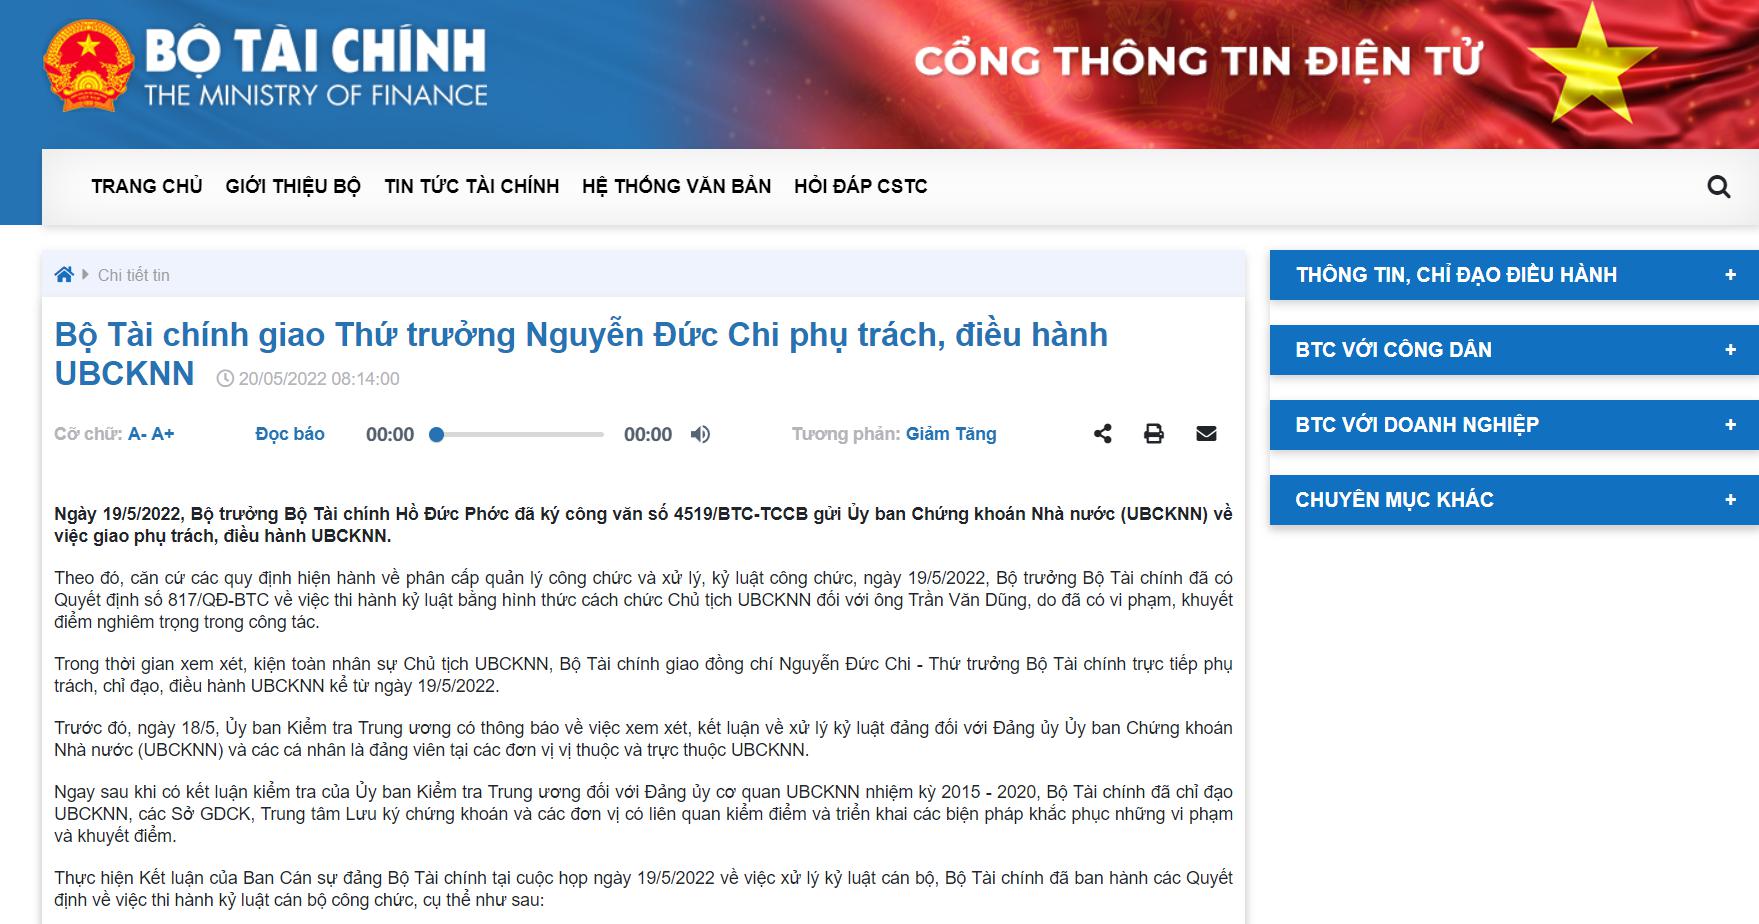 越南证券市场“大扫除”动静惊人 证监会主席被问责